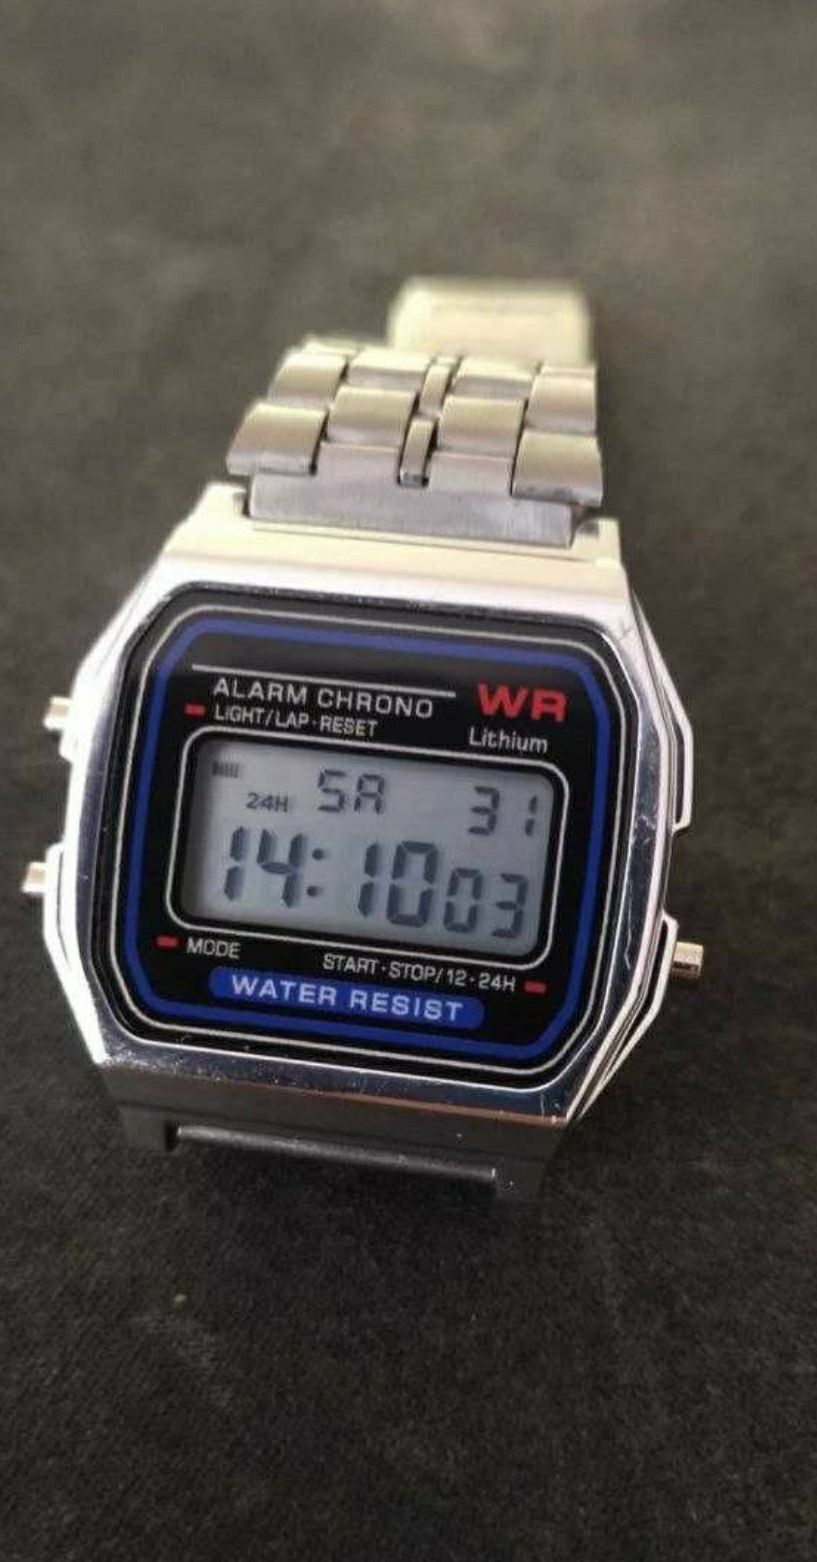 Часы винтажные электронные в стиле 80-х.

Так же смотрите мои другие о